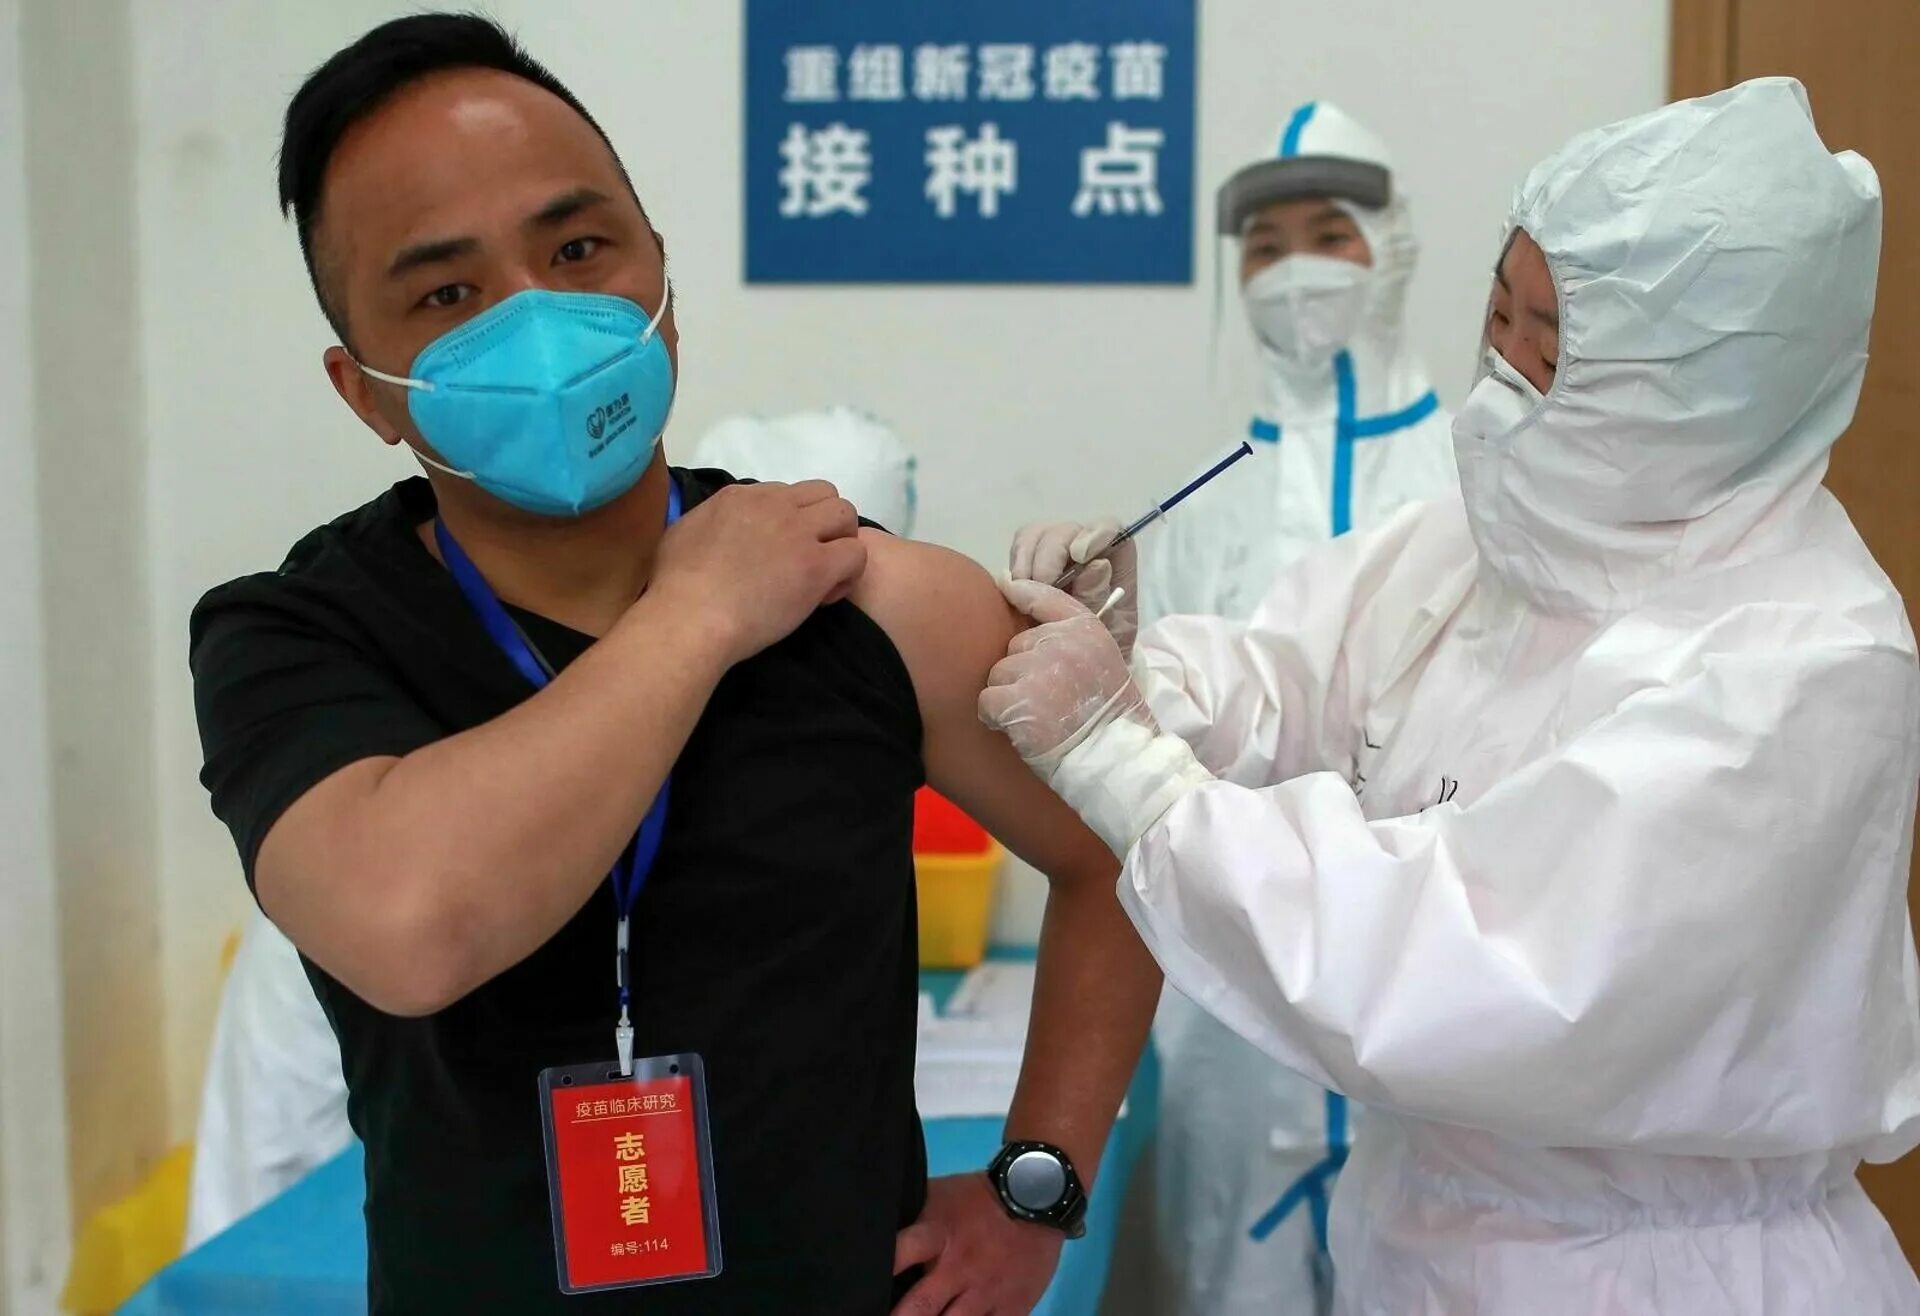 Covid-19 вакцина китайская. Вакцинация в Китае. Здравоохранение в Китае. Ковид в Китае вакцинация. Вакцины японии